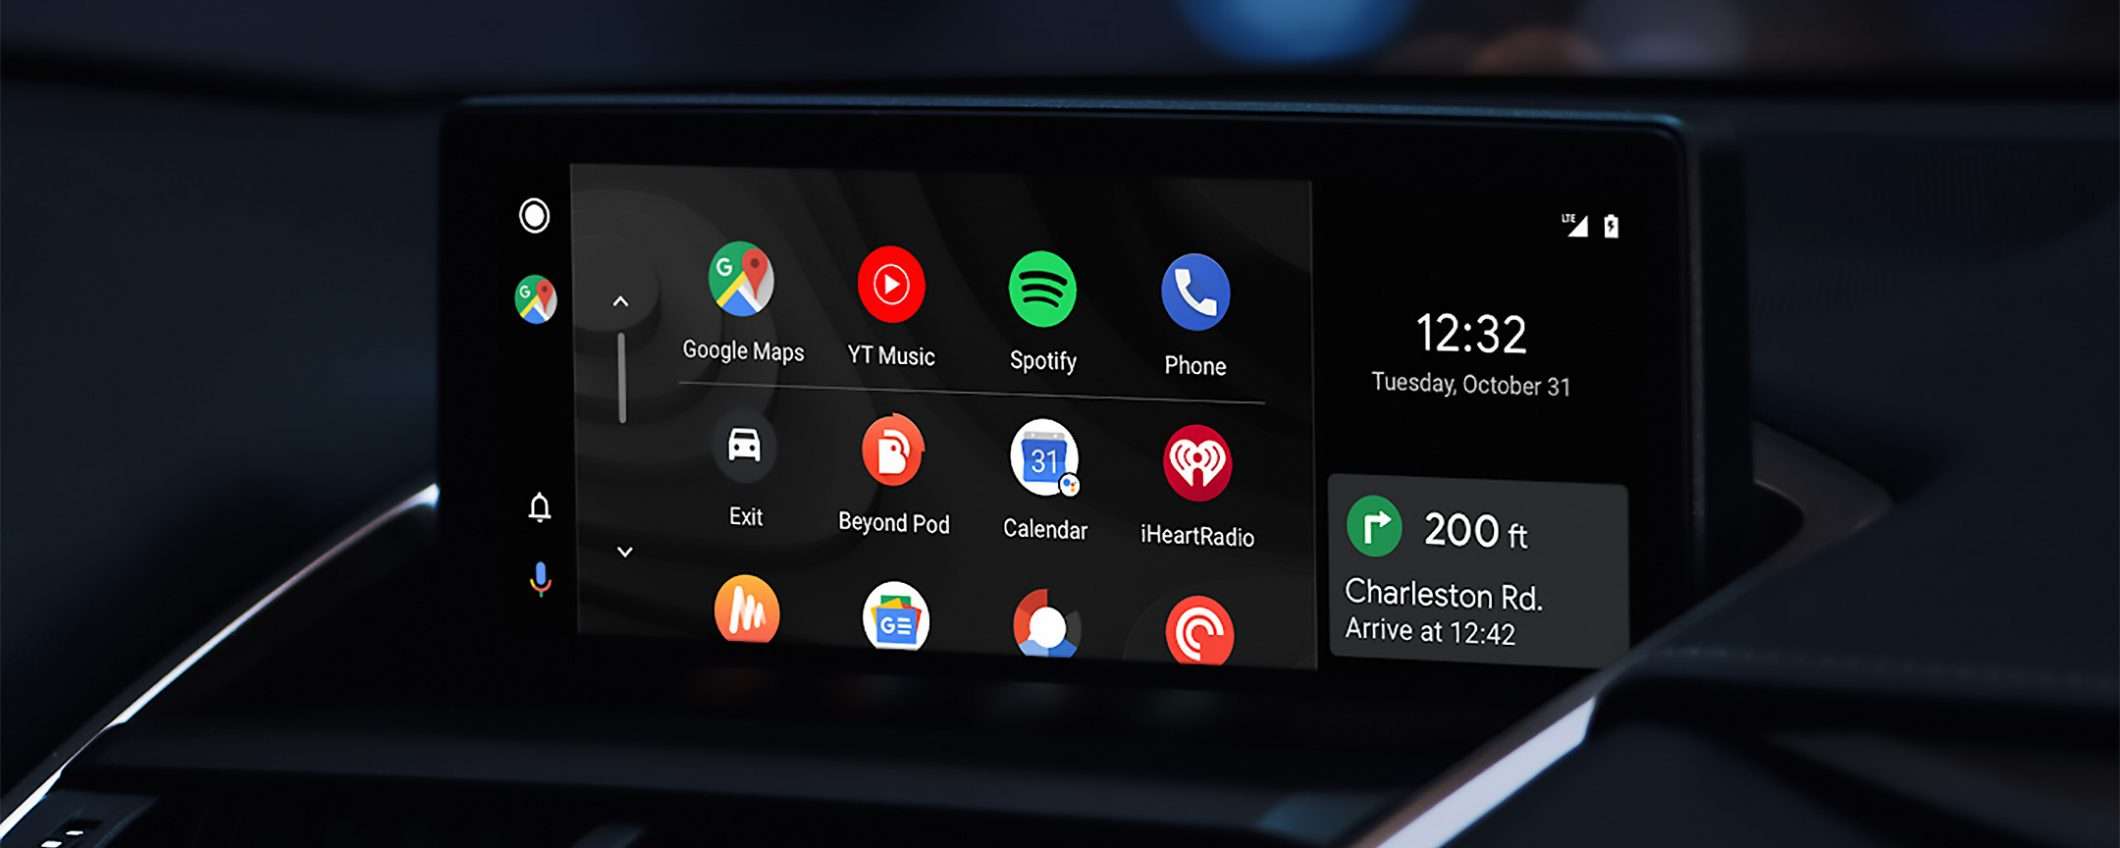 Nuovo Android Auto: focus su Maps e comandi vocali